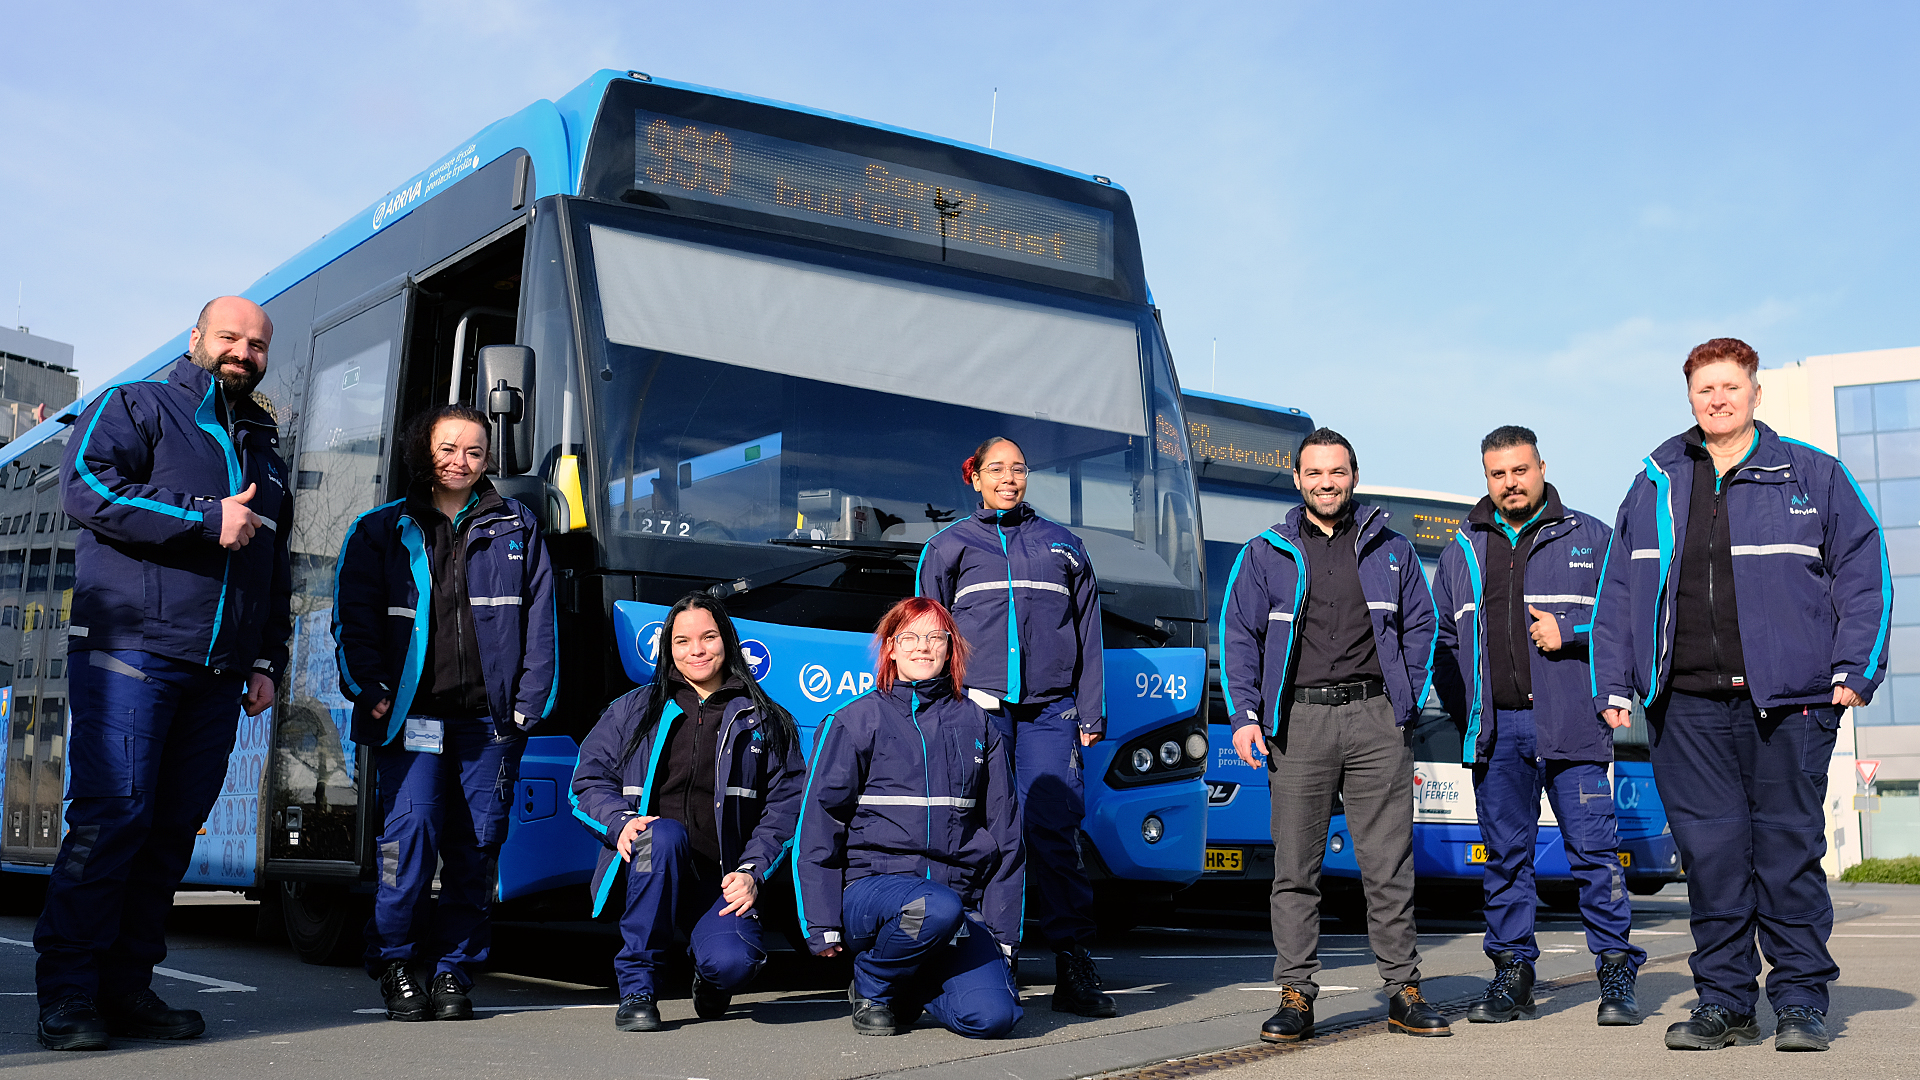 Studenten van Arriva in Leeuwarden poseren voor een bus